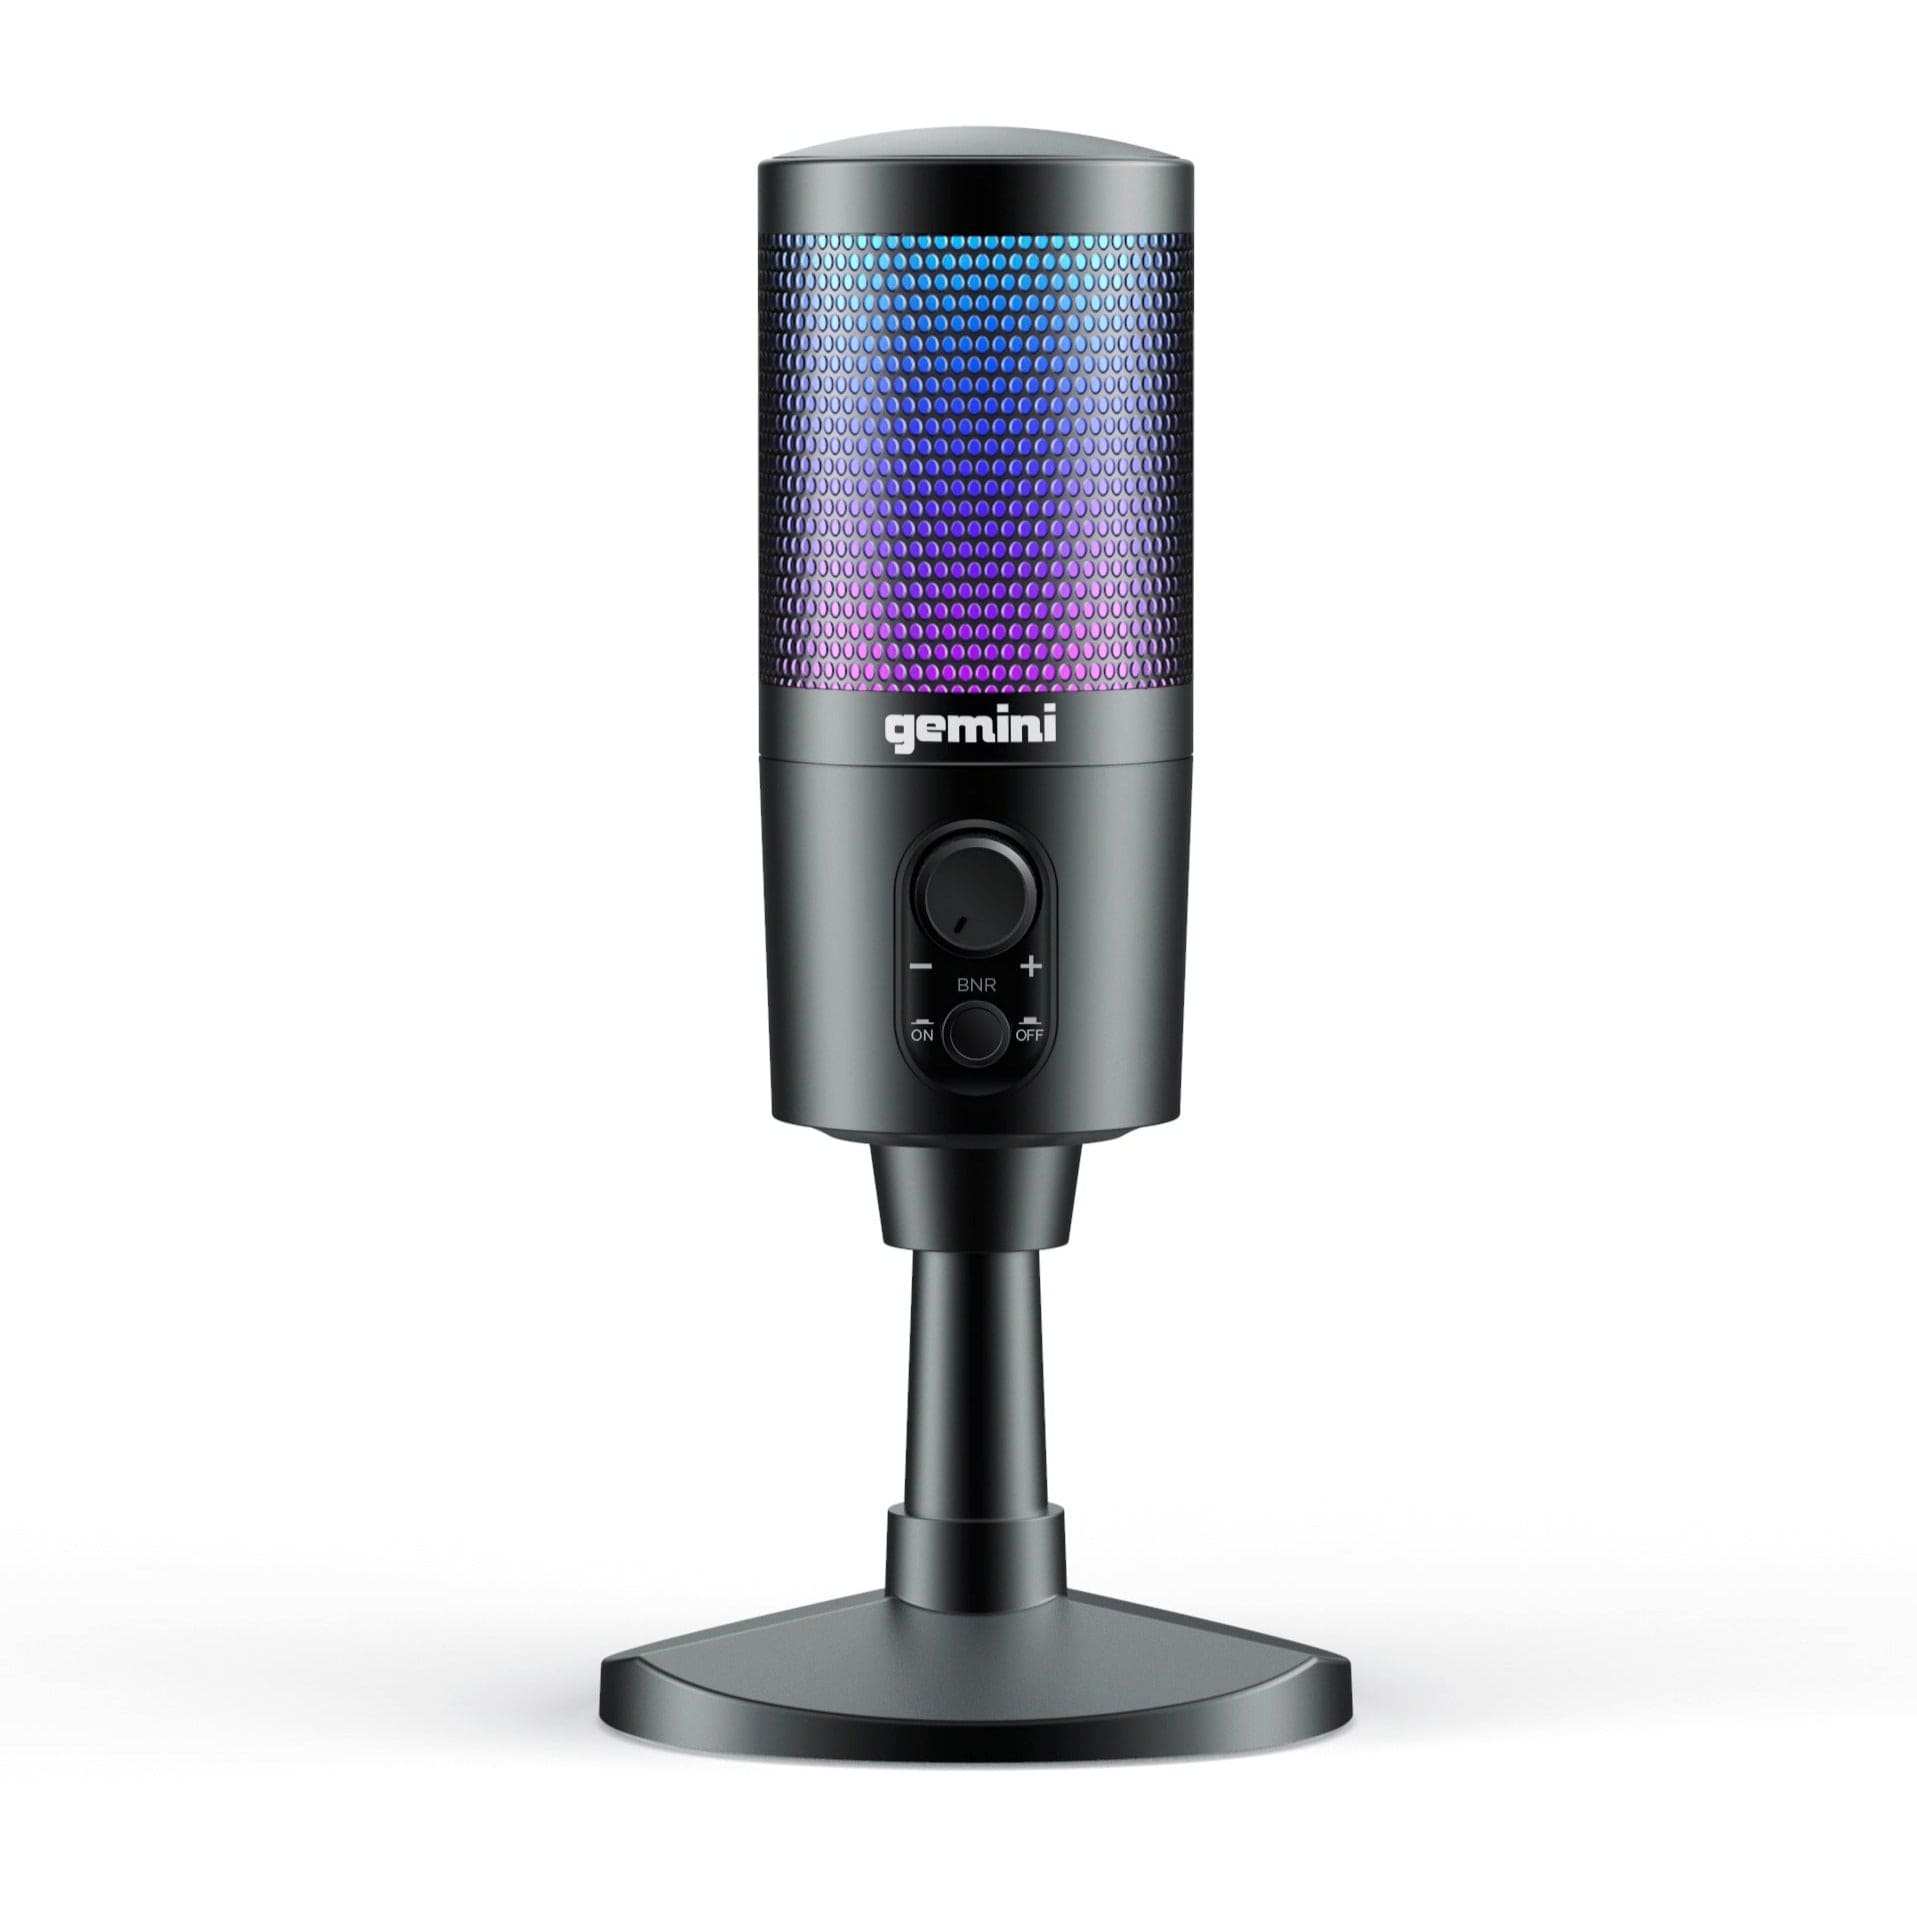 Gemini Sound GSM-100 Microphone